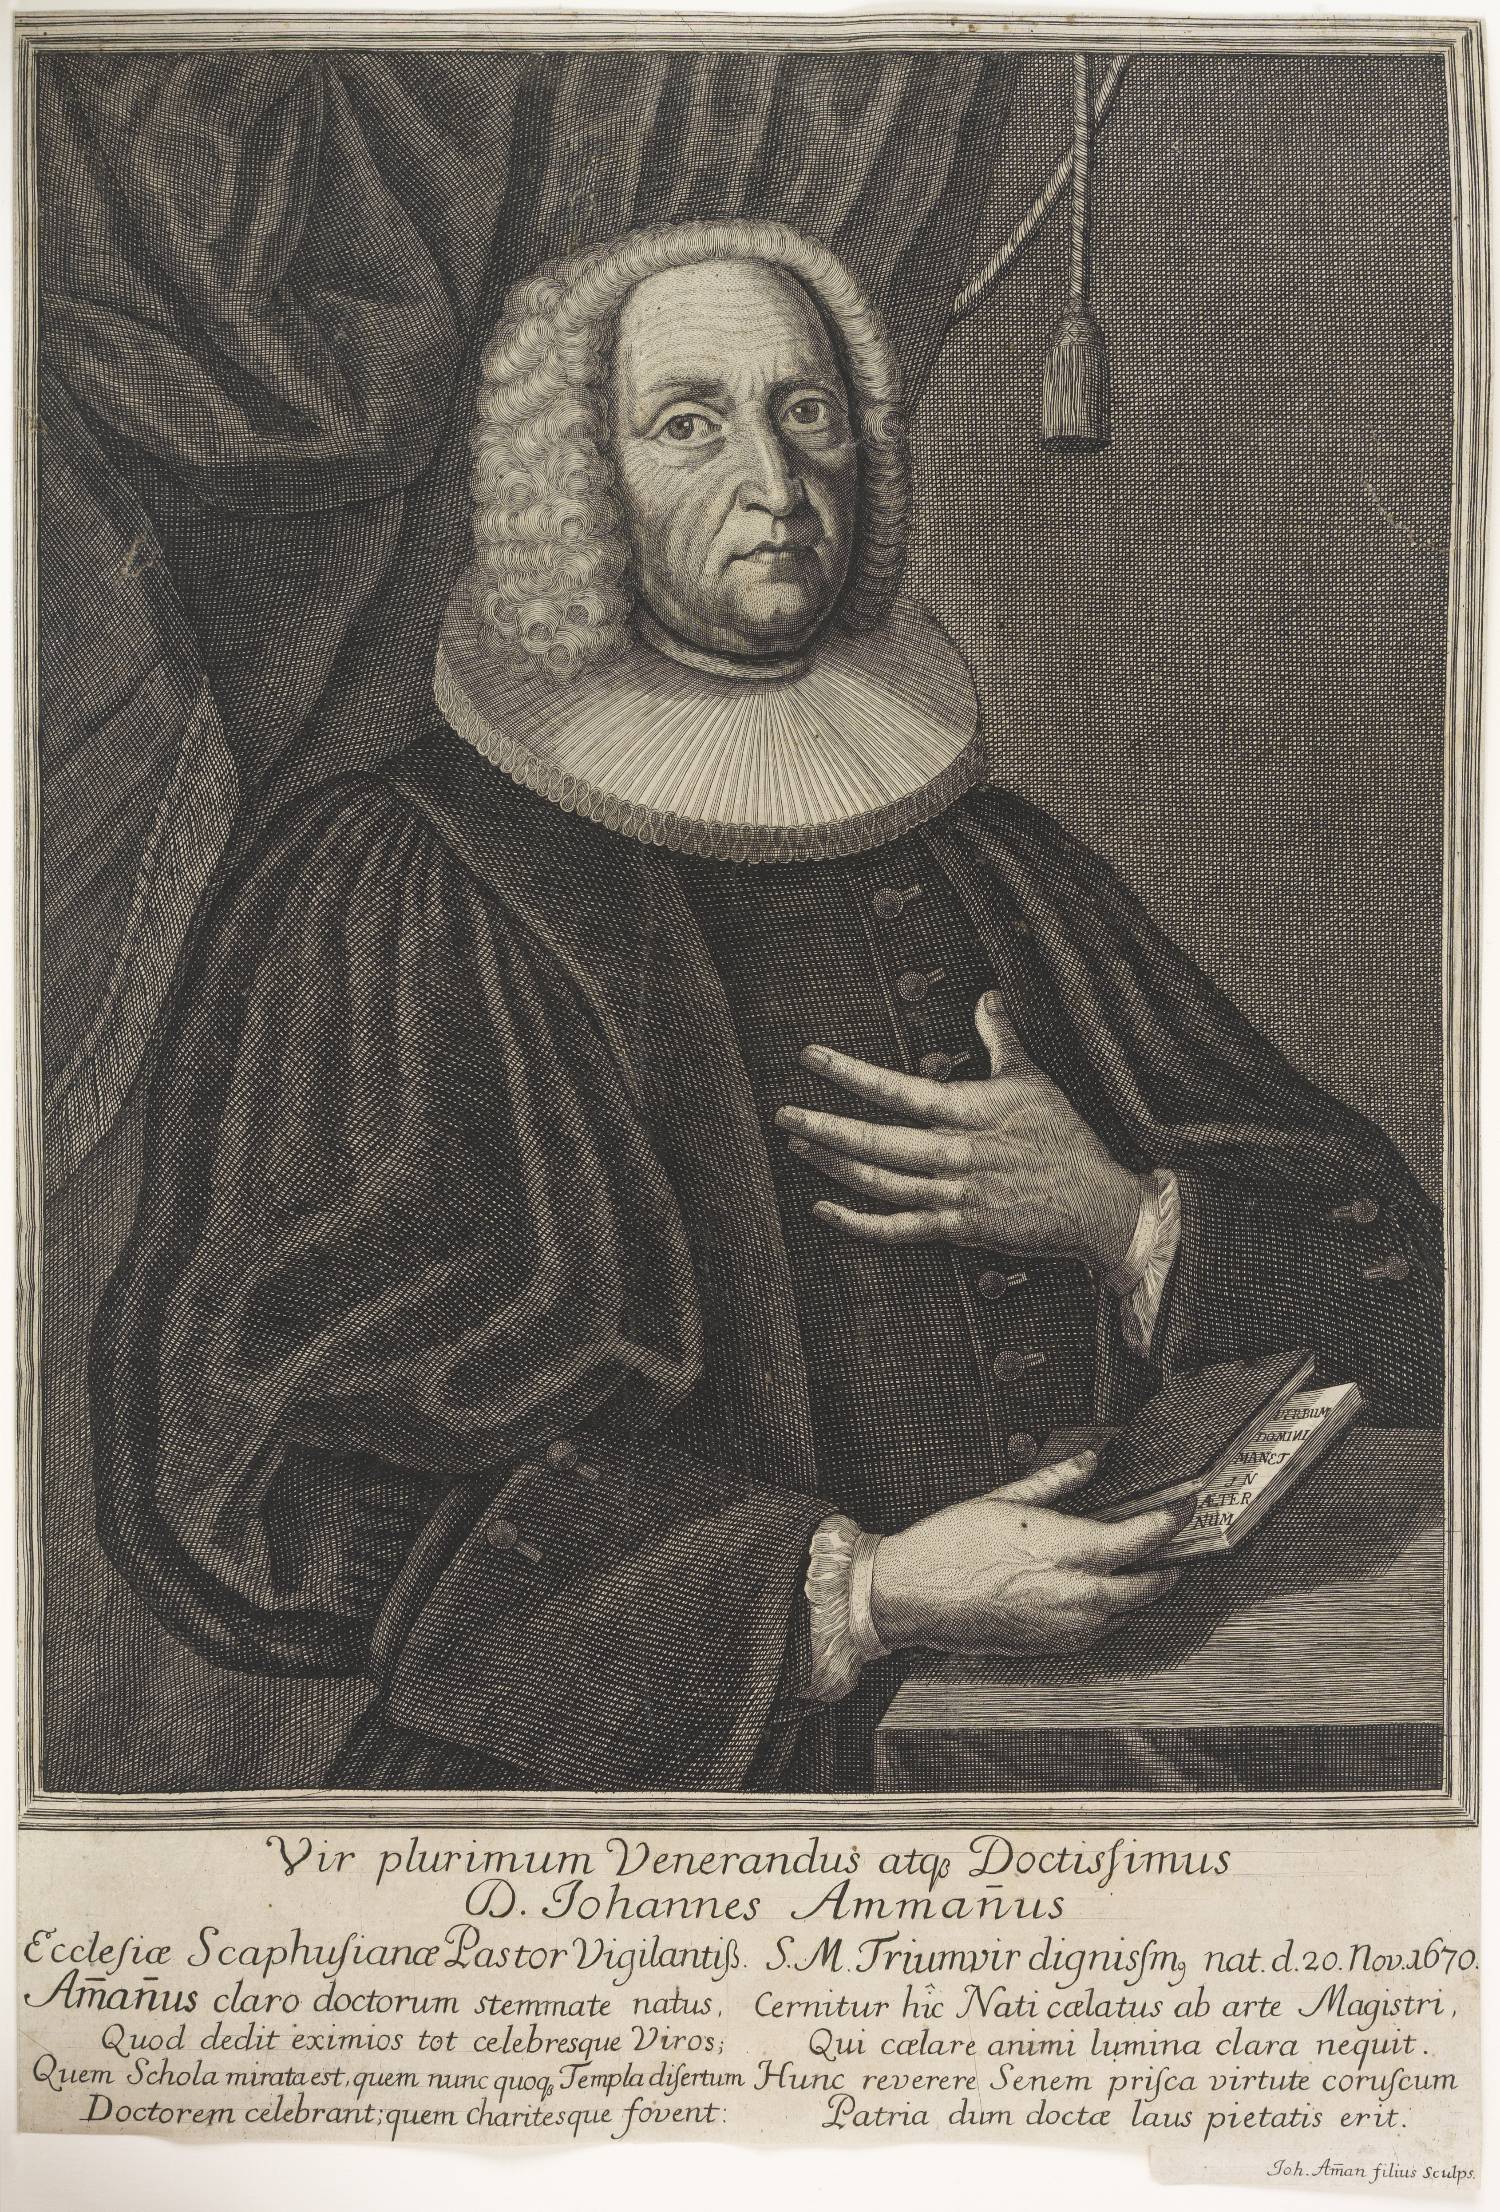 D. Johannes Ammannus (Vater des Künstlers) "Ecclesiae Scaphusience Pastor Vigilantis"